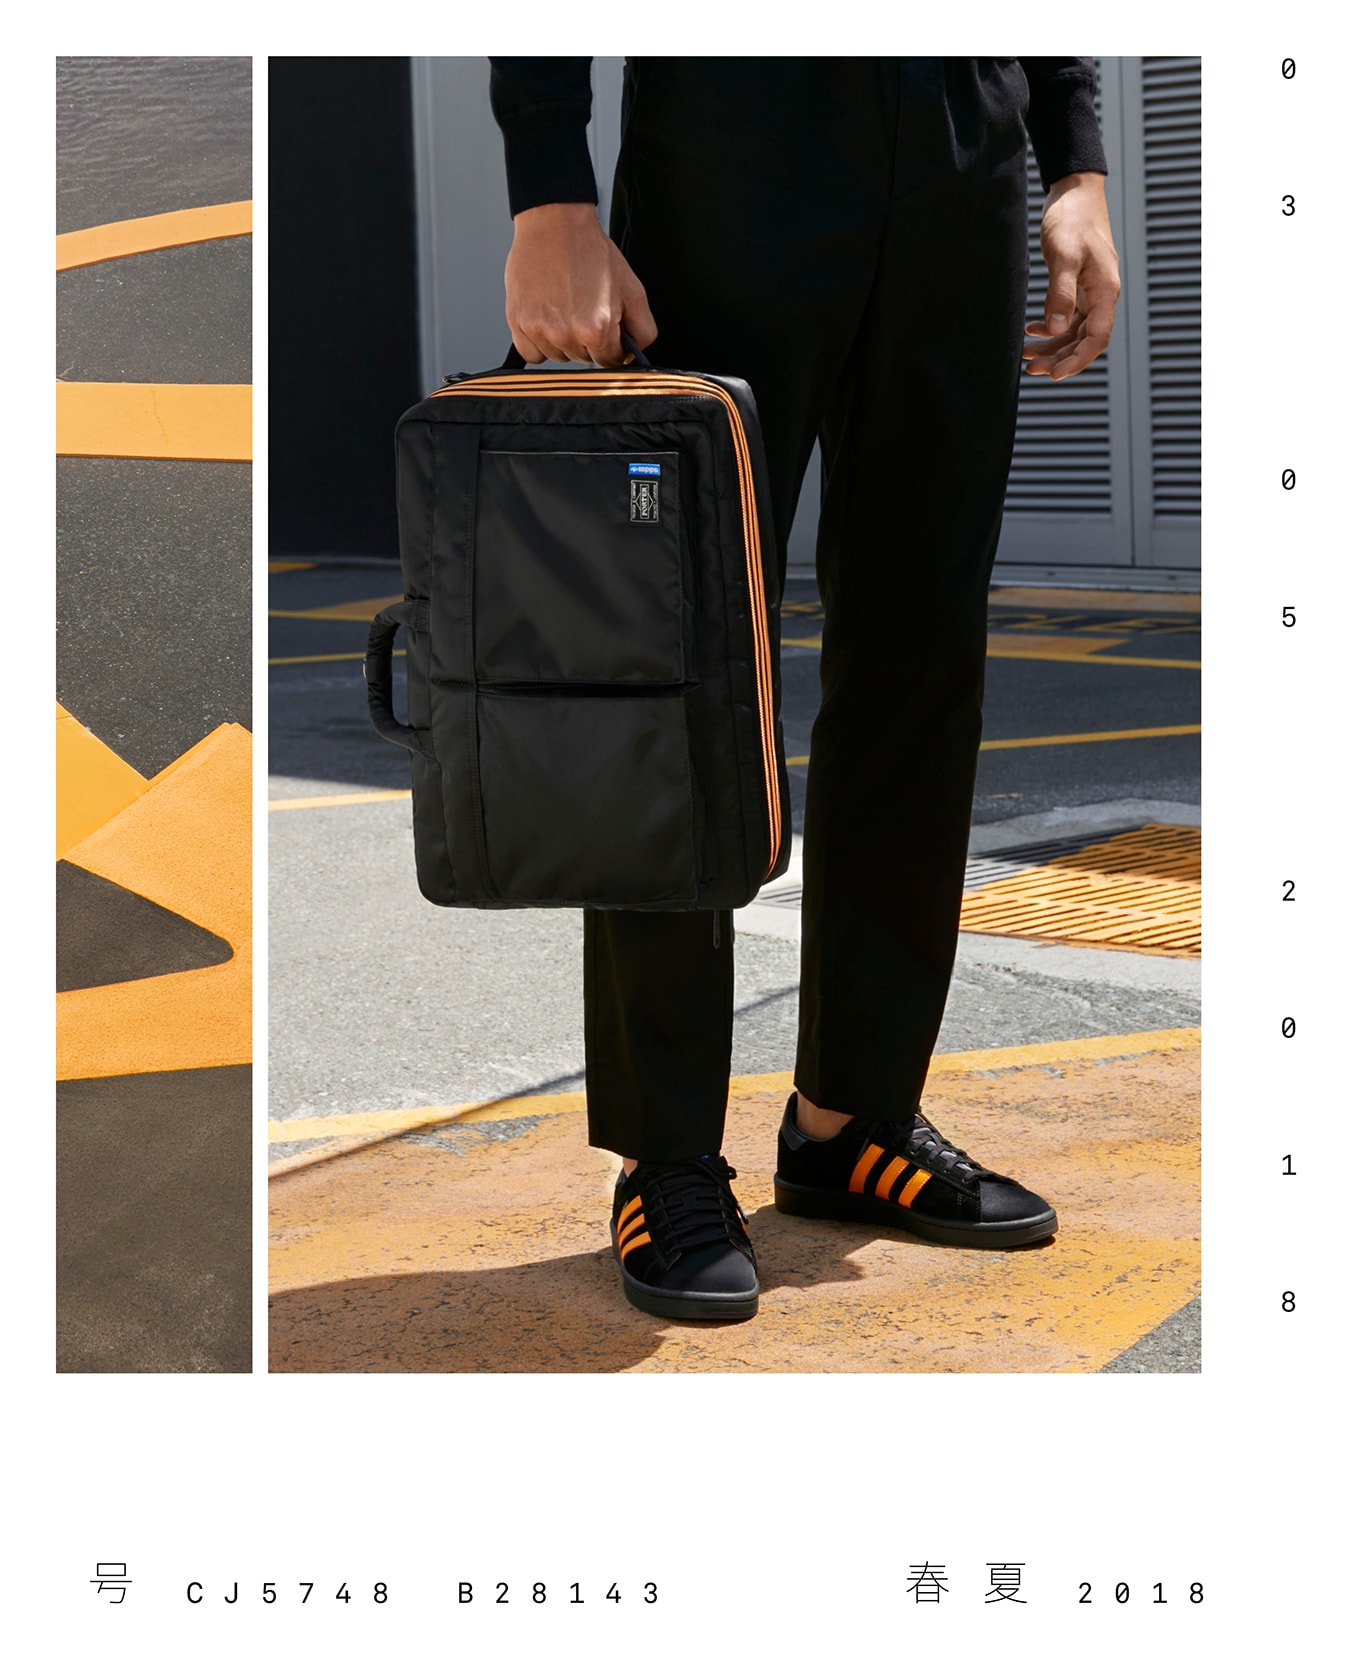 PORTER Yoshida Co adidas Originals Campus Luggage Bags 2-way Boston 3-way Brief Case Release Details Information Black Orange Collaboration Spring/Summer 2018 How to Buy Closer Look